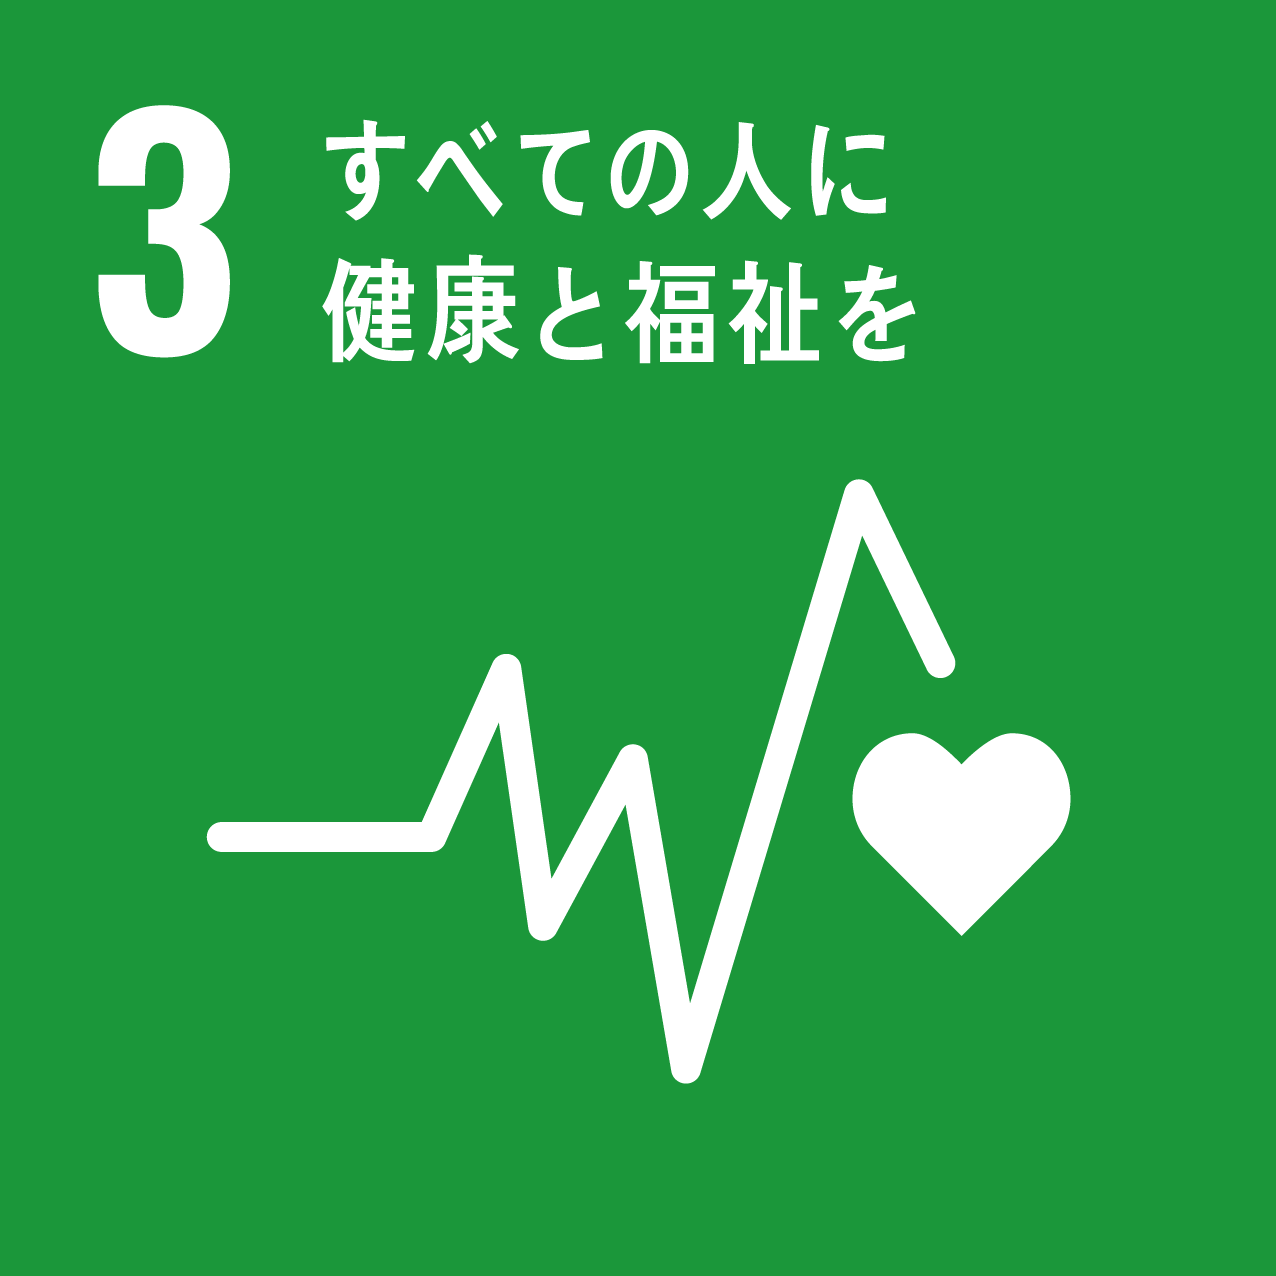 【SDGsアイコン・3】すべての人に健康と福祉を